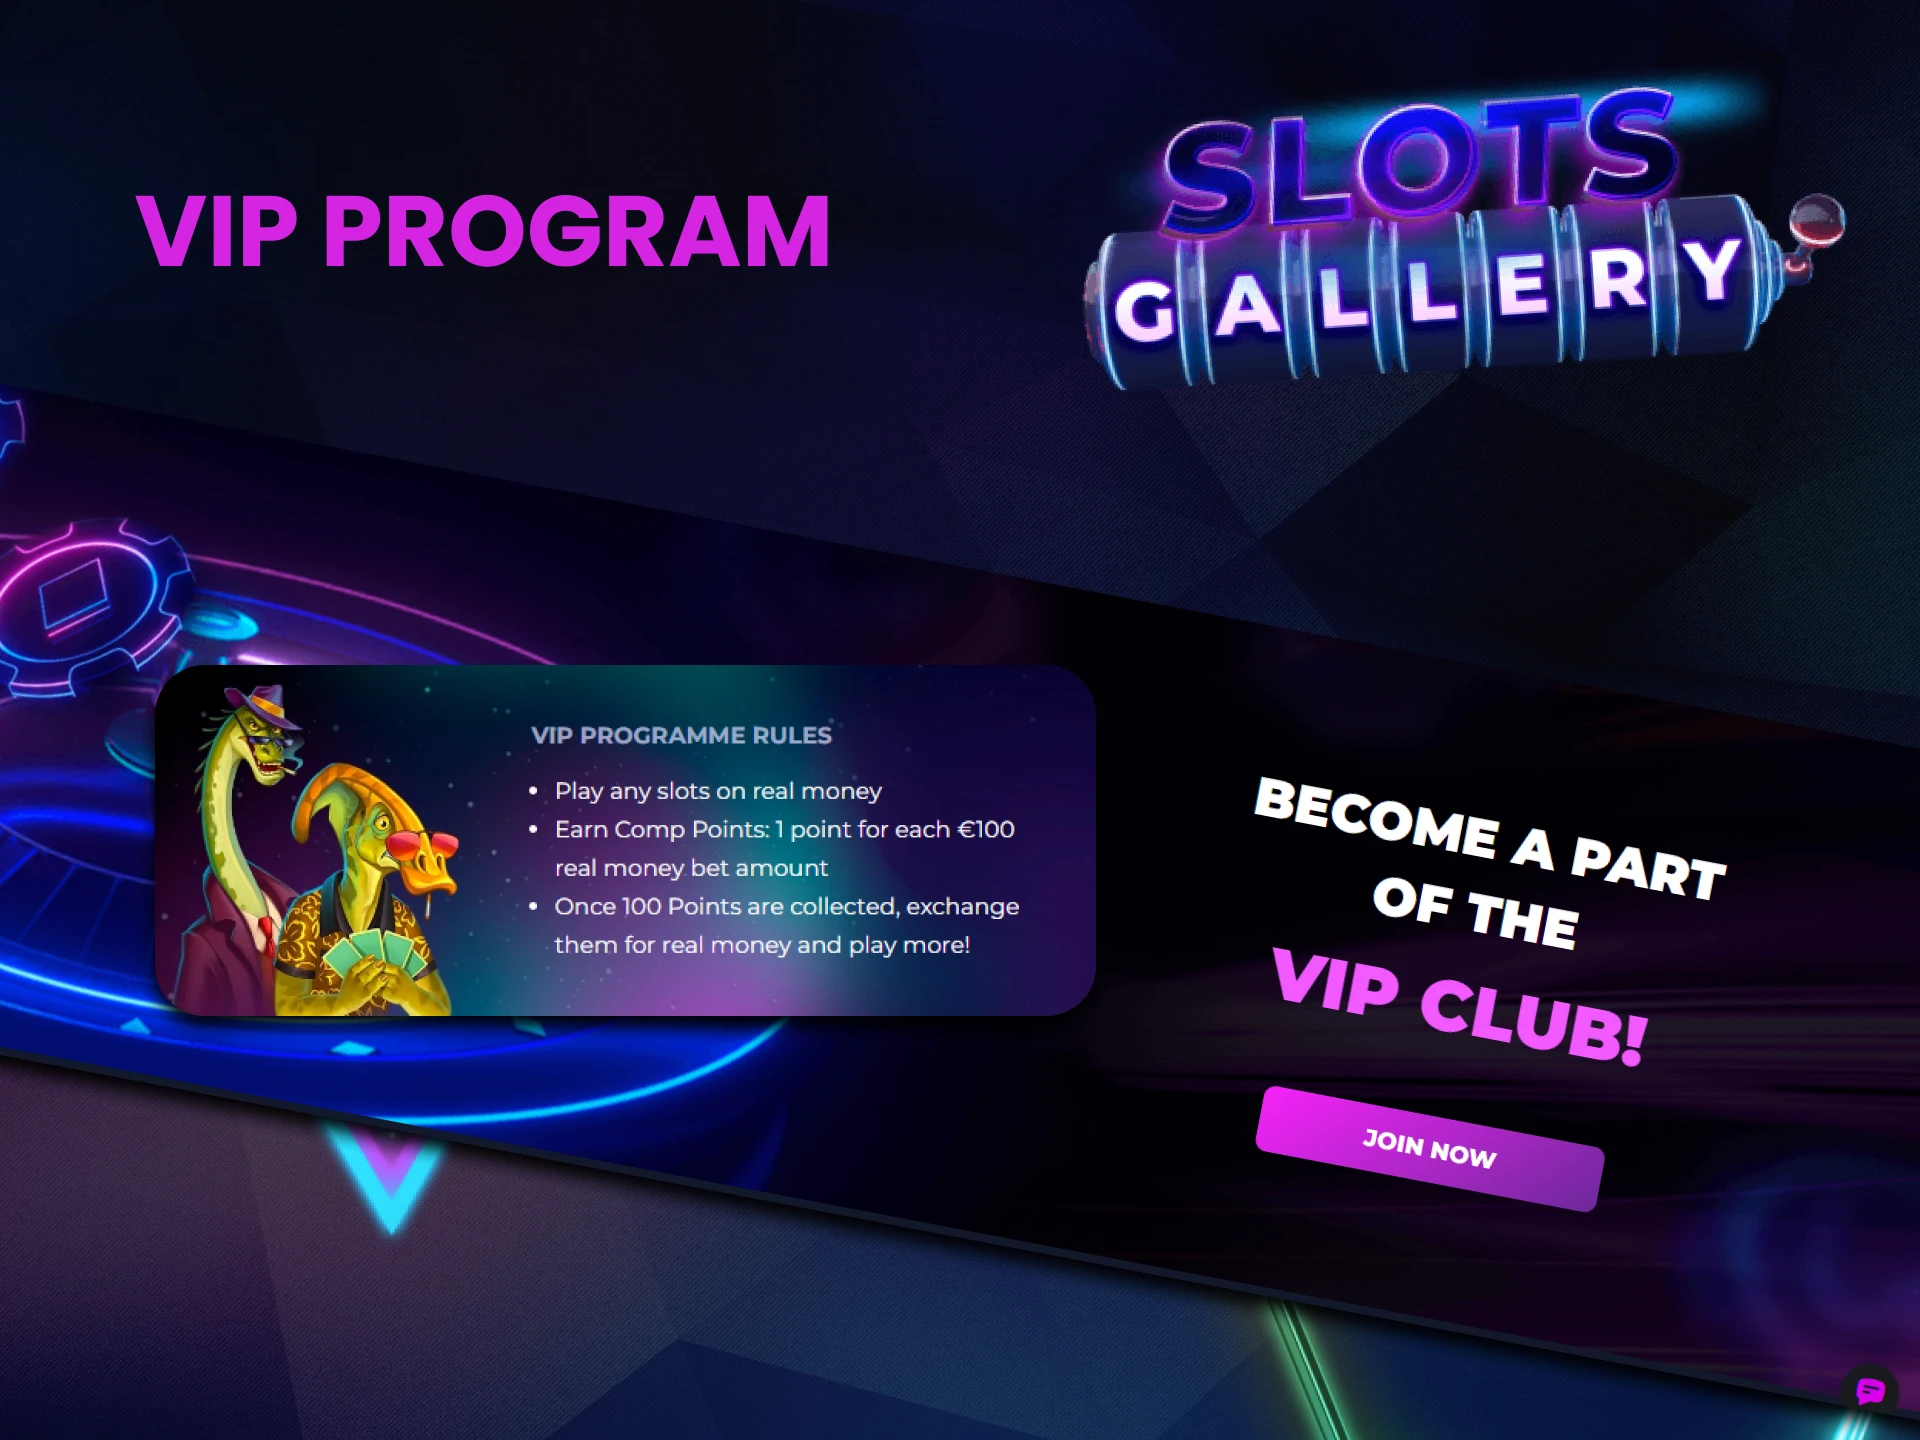 Slots Gallery has a special VIP program.